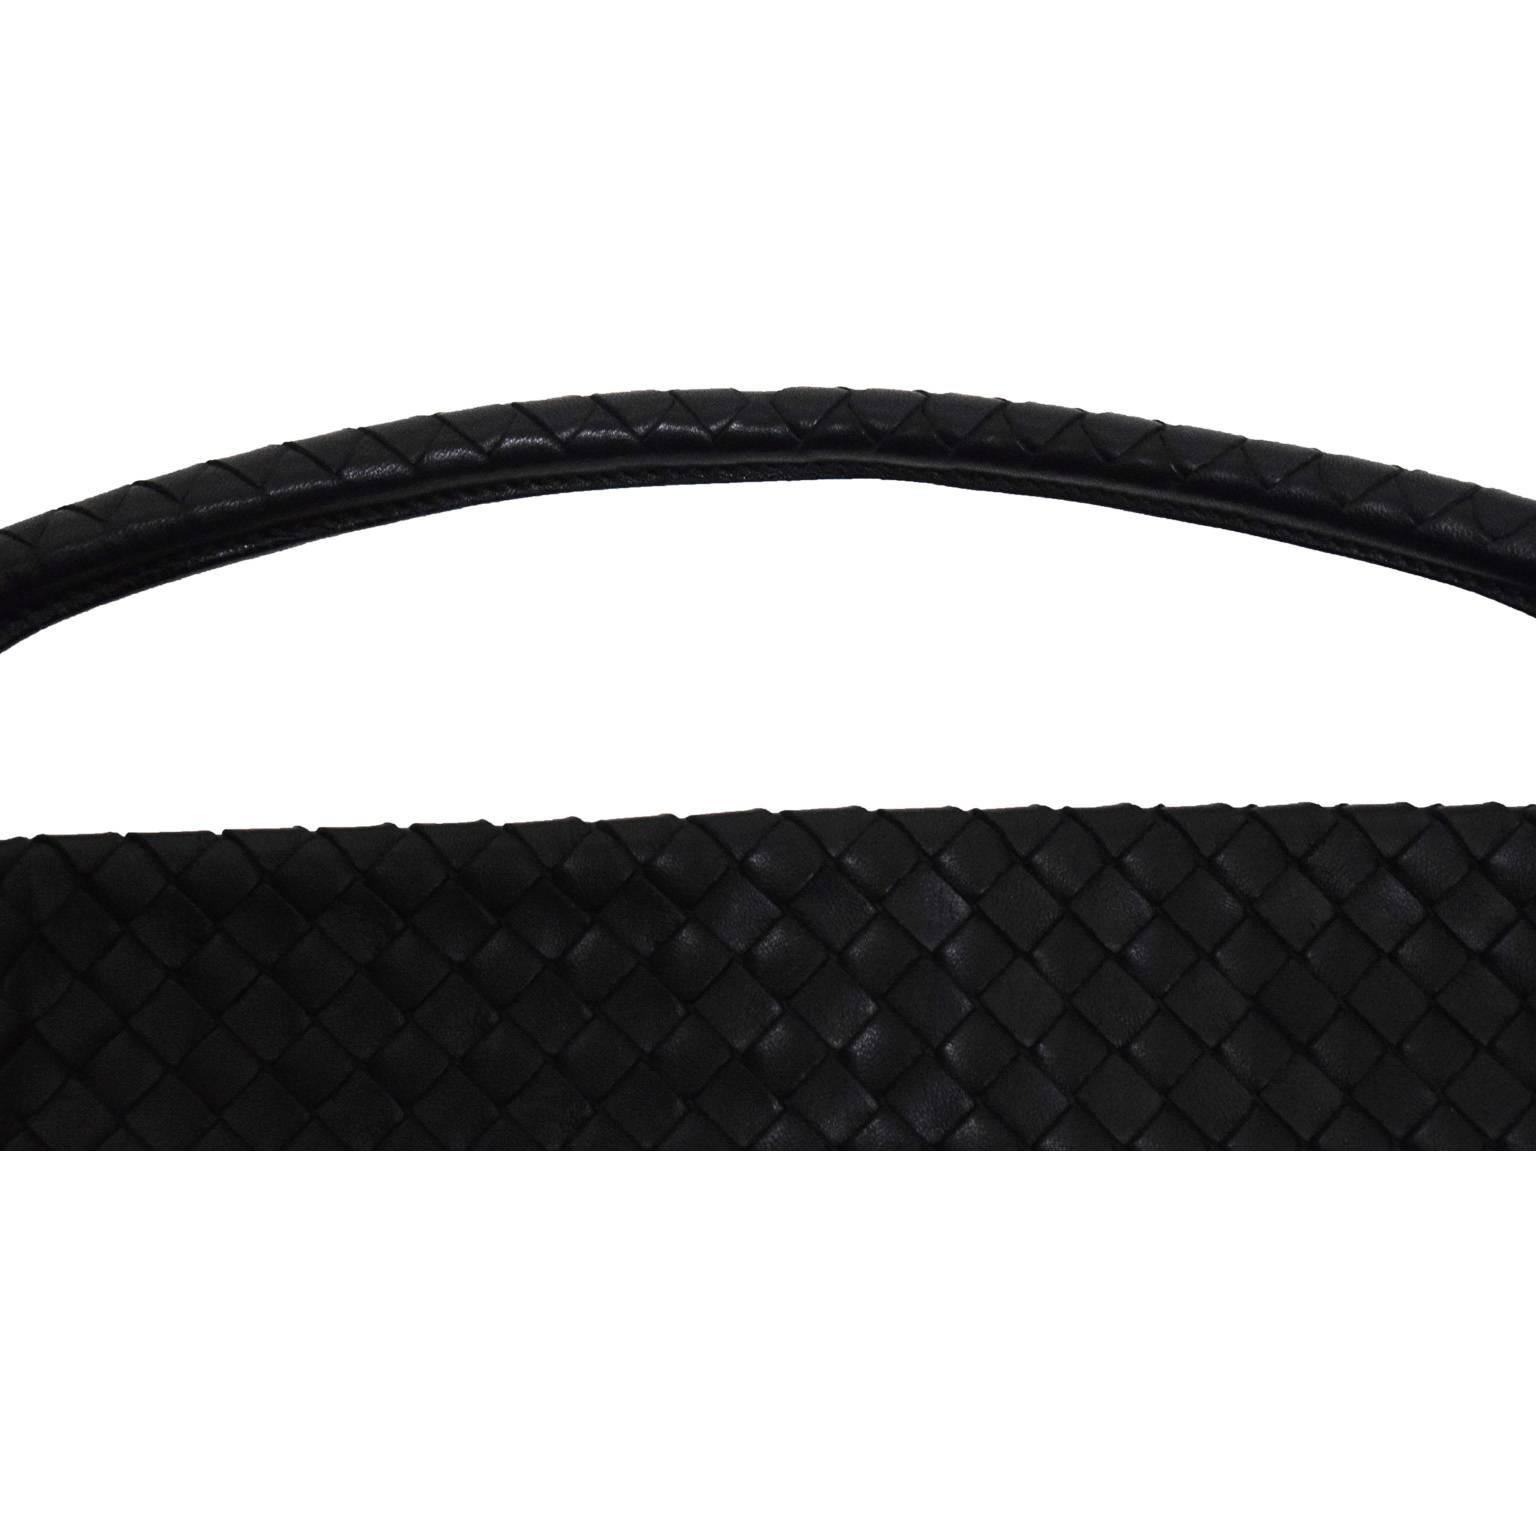 Bottega Veneta Black Woven Leather Handbag with Duster  For Sale 1